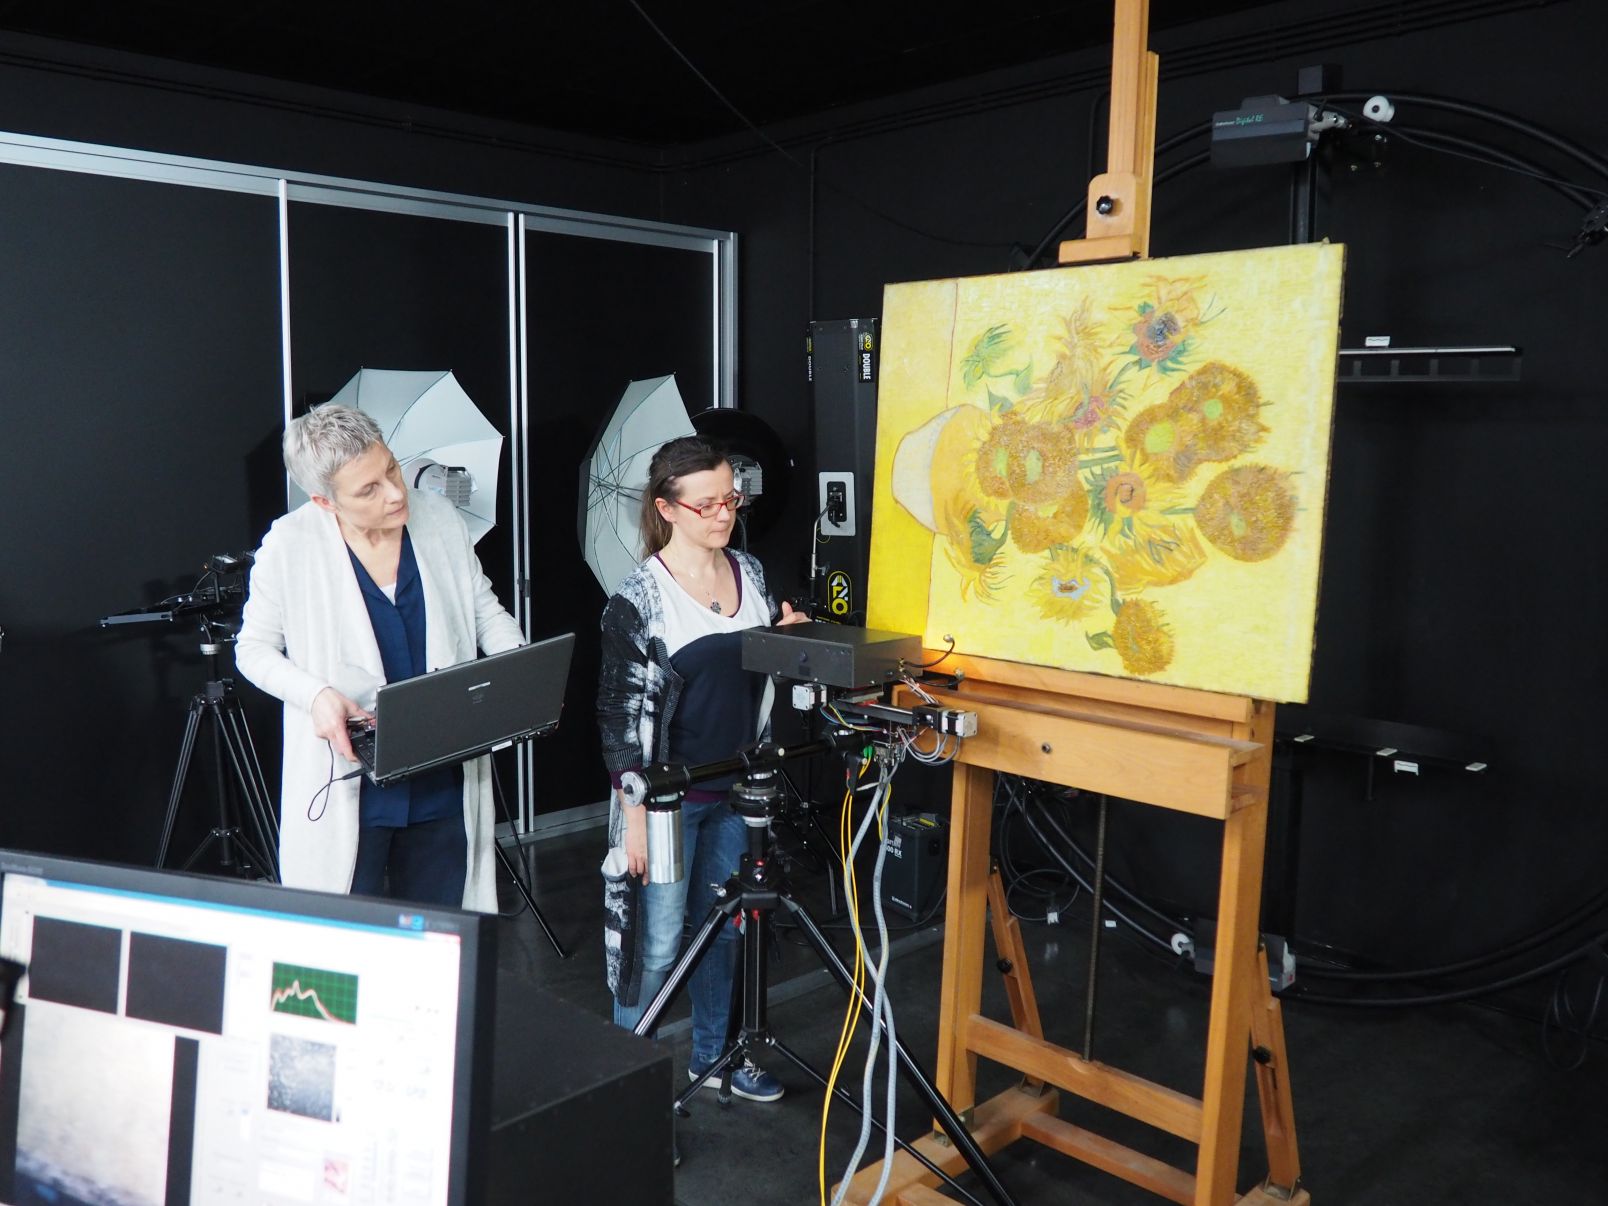 badania OCT obrazu "Słoneczniki" V. van Gogha w Muzeum van Gogha w Amsterdamie, od lewej: prof. Ella Hendrix - Uniwersytet w Amsterdamie, dr hab. Magdalena Iwanicka, prof. UMK - WSzP UMK